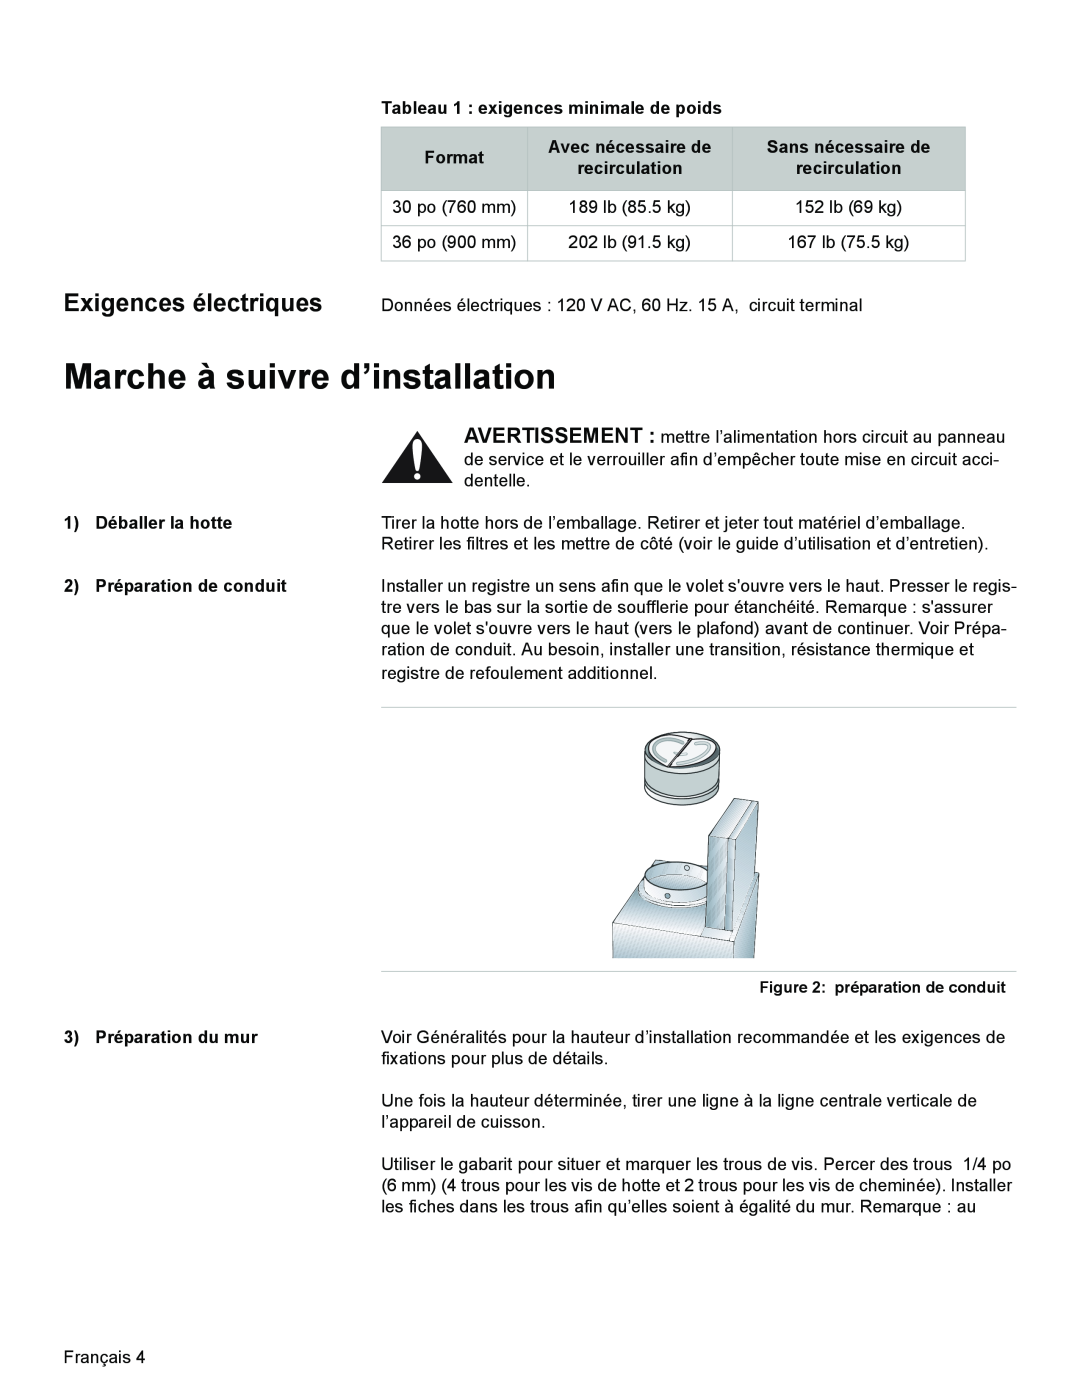 Bosch Appliances DKE96 Marche à suivre d’installation, Exigences électriques, Tableau 1 exigences minimale de poids 